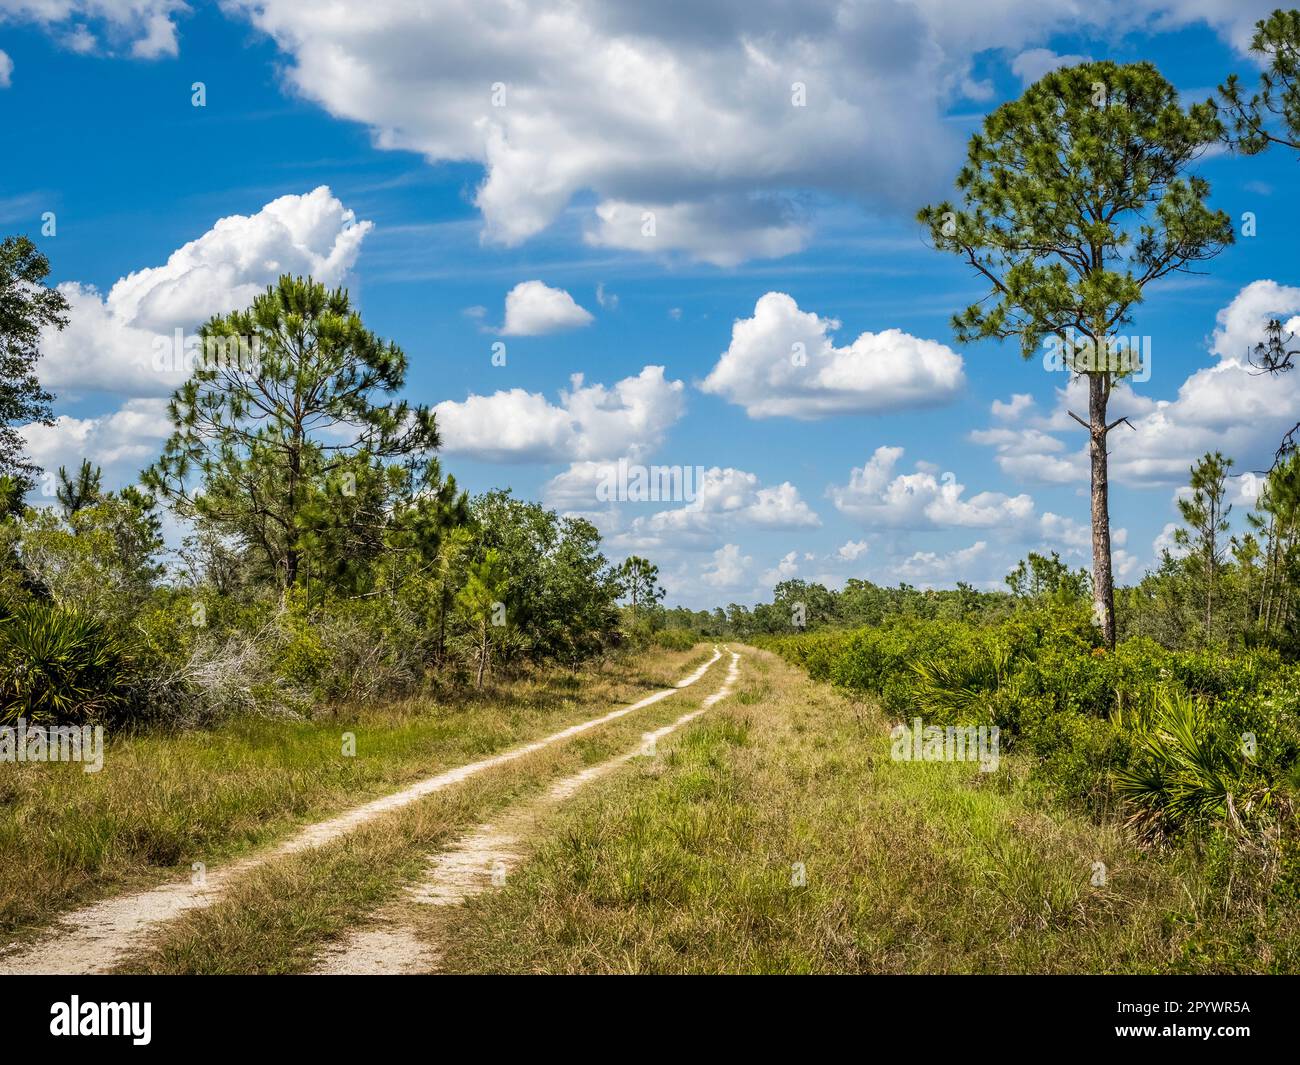 Randonnée pédestre, piste cyclable dans la réserve Deer Prairie Creek lors de la journée d'été bleu ciel blanc nuage à Venise dans le sud-ouest de la Floride États-Unis Banque D'Images